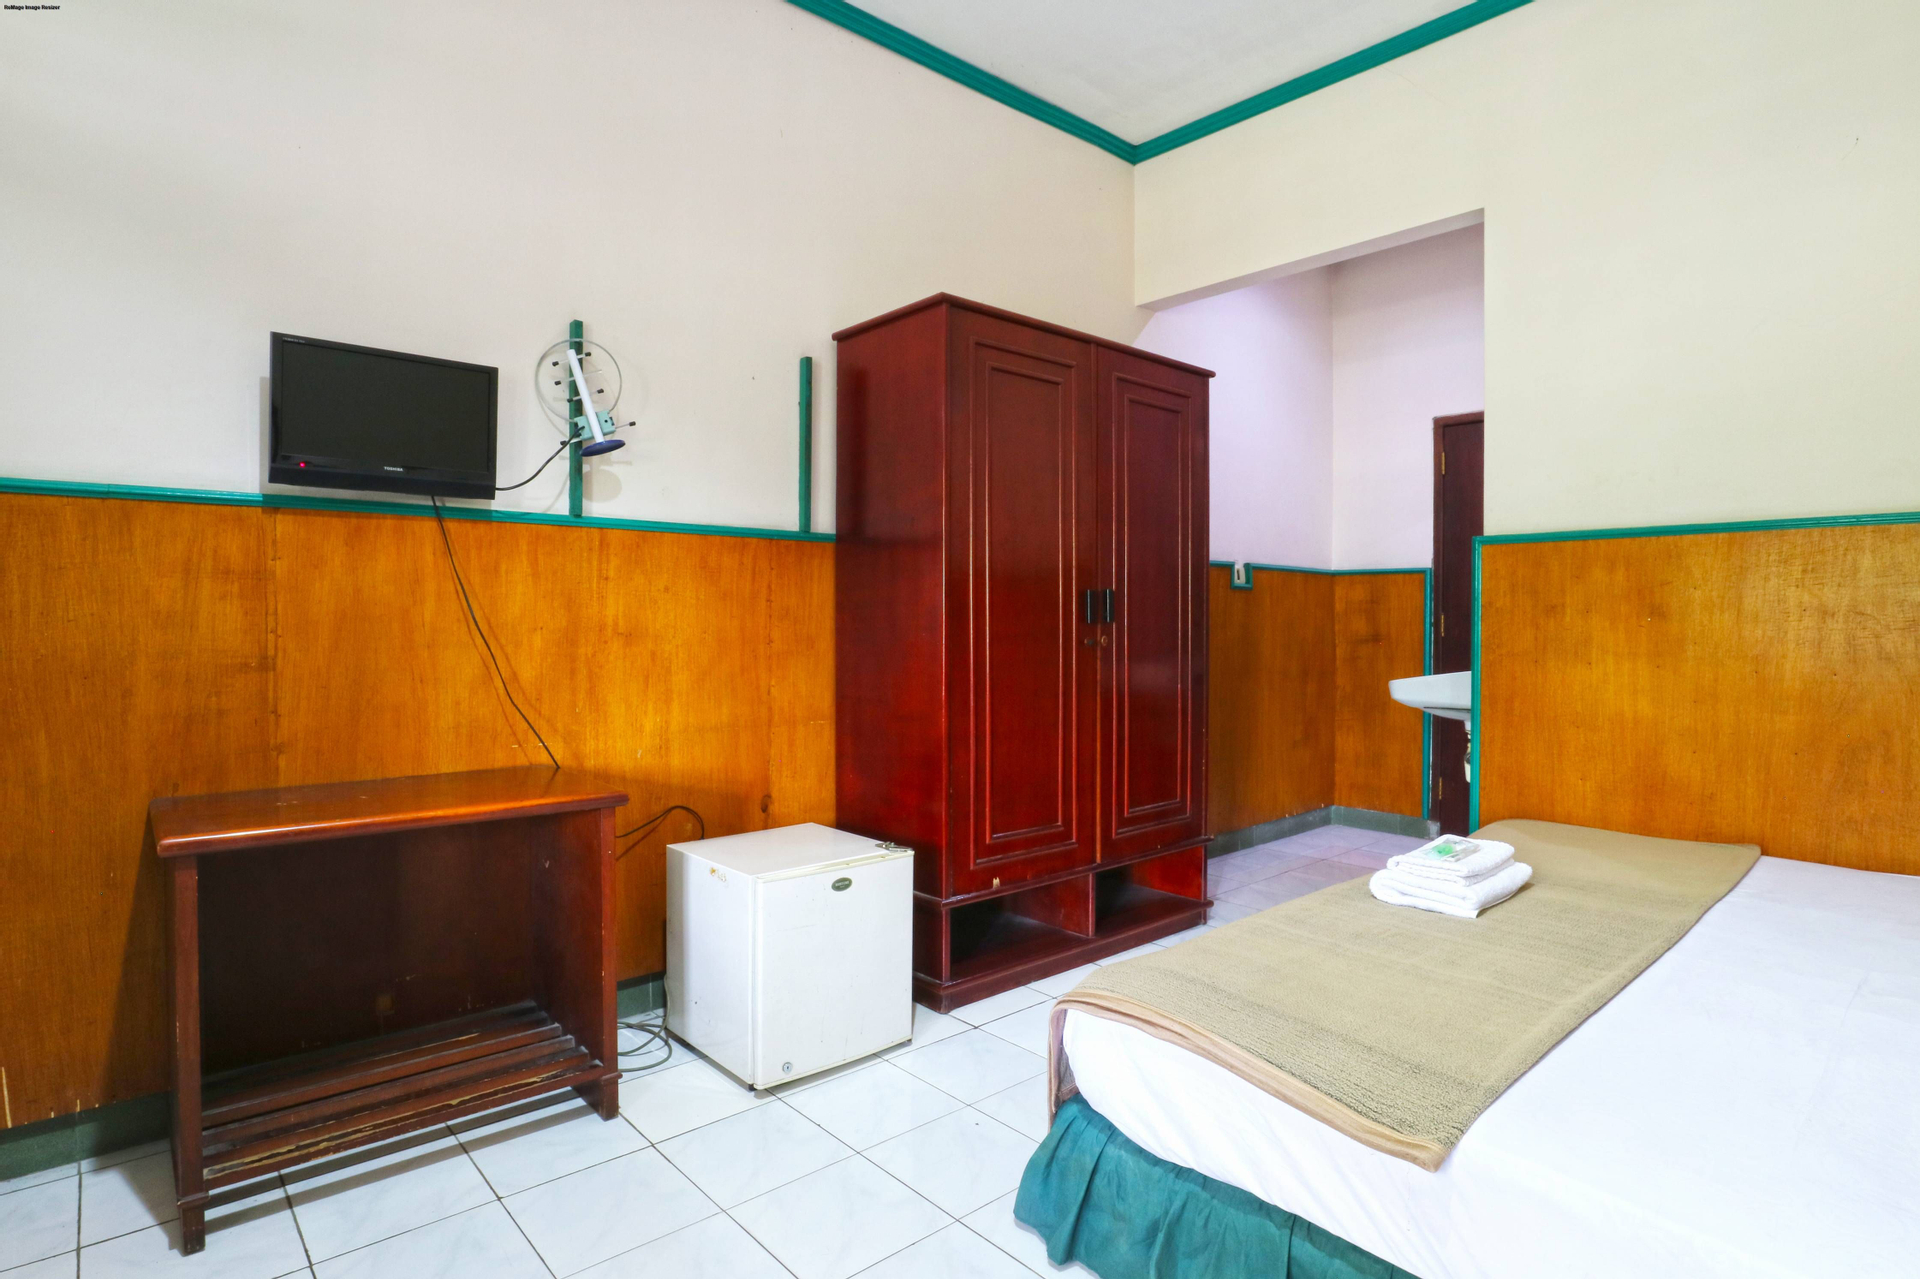 Bedroom, Hotel Shabine, Surabaya